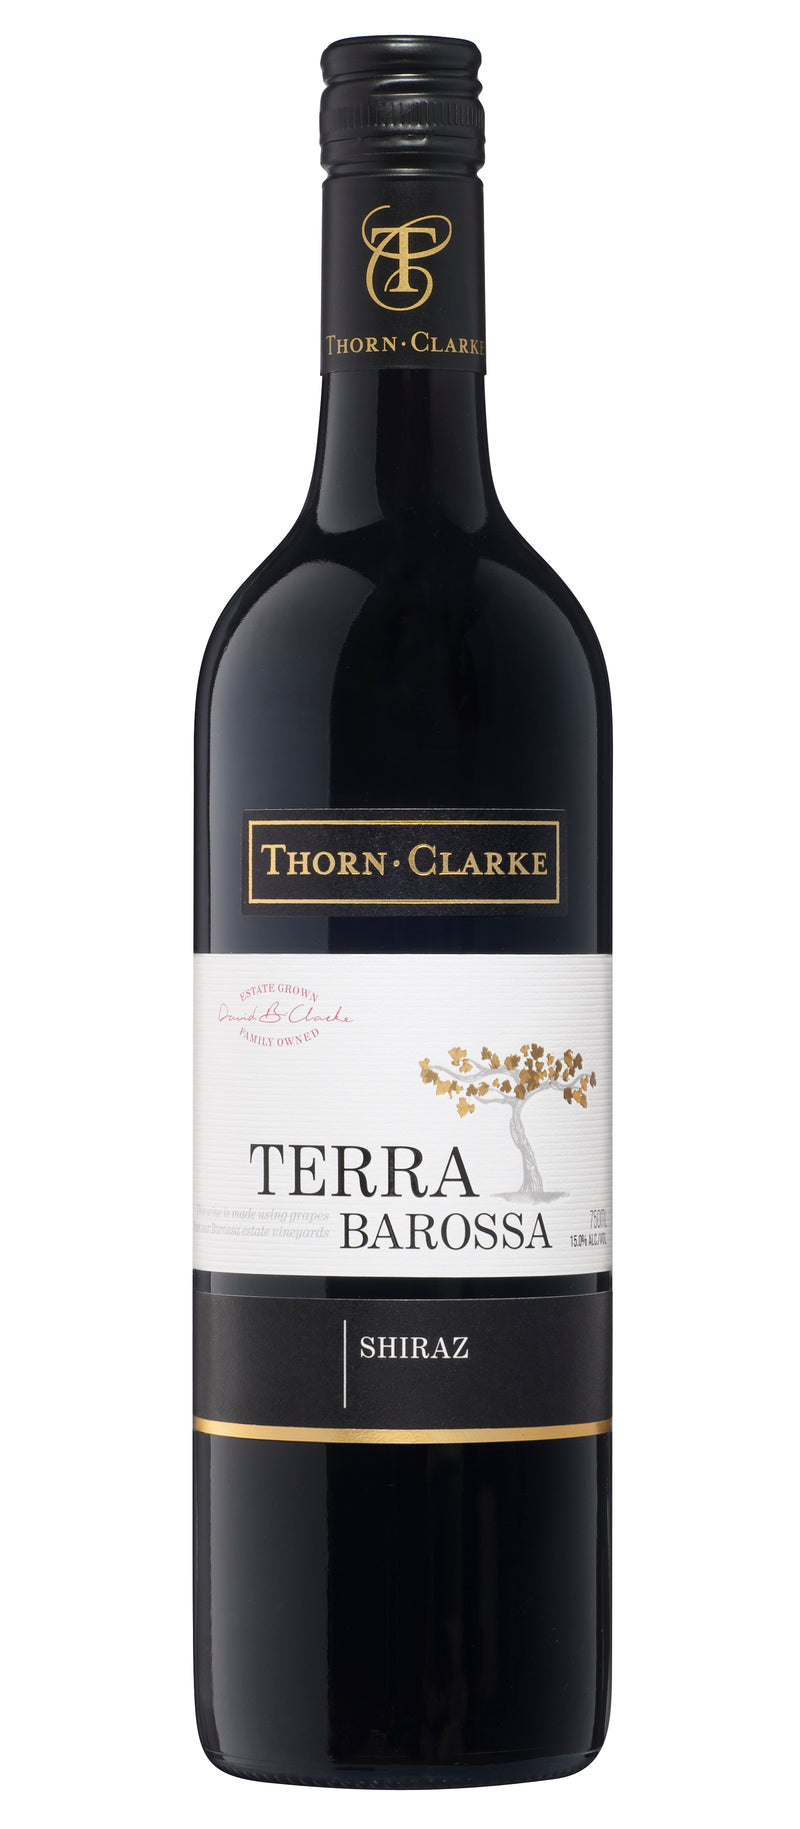 THORN-CLARK TERRA BAROSSA SHIRAZ